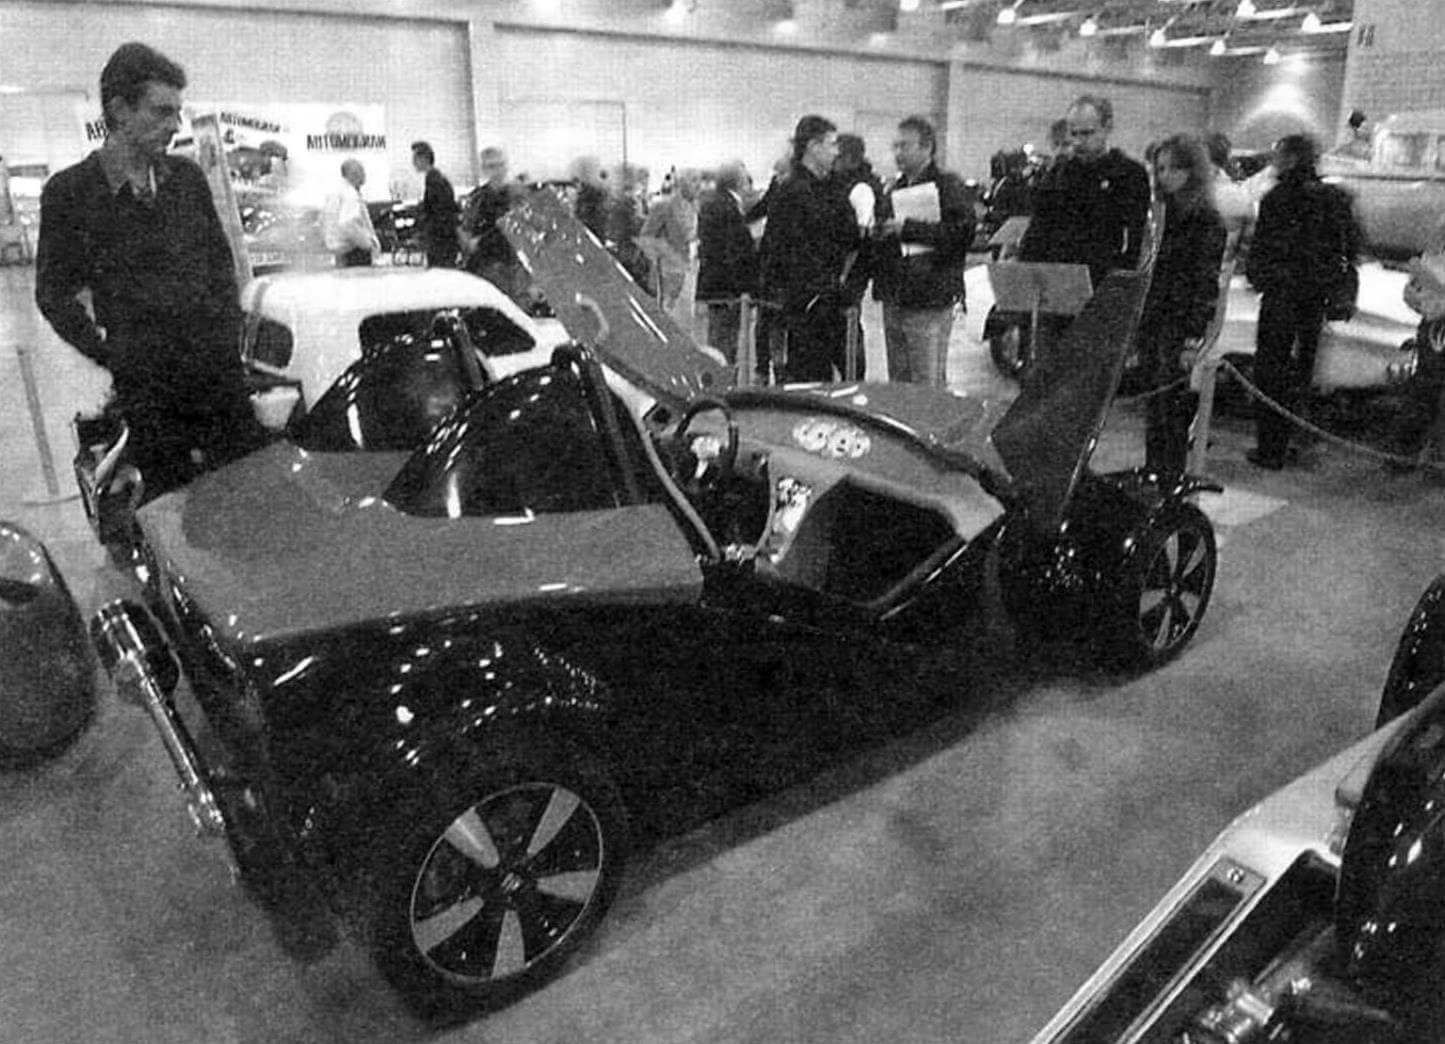 Родстер FOX в экспозиции выставки «Они строили автомобиль» («Андеграунд советского автопрома»). Сентябрь 2011 года, Москва (Крокус Экспо)